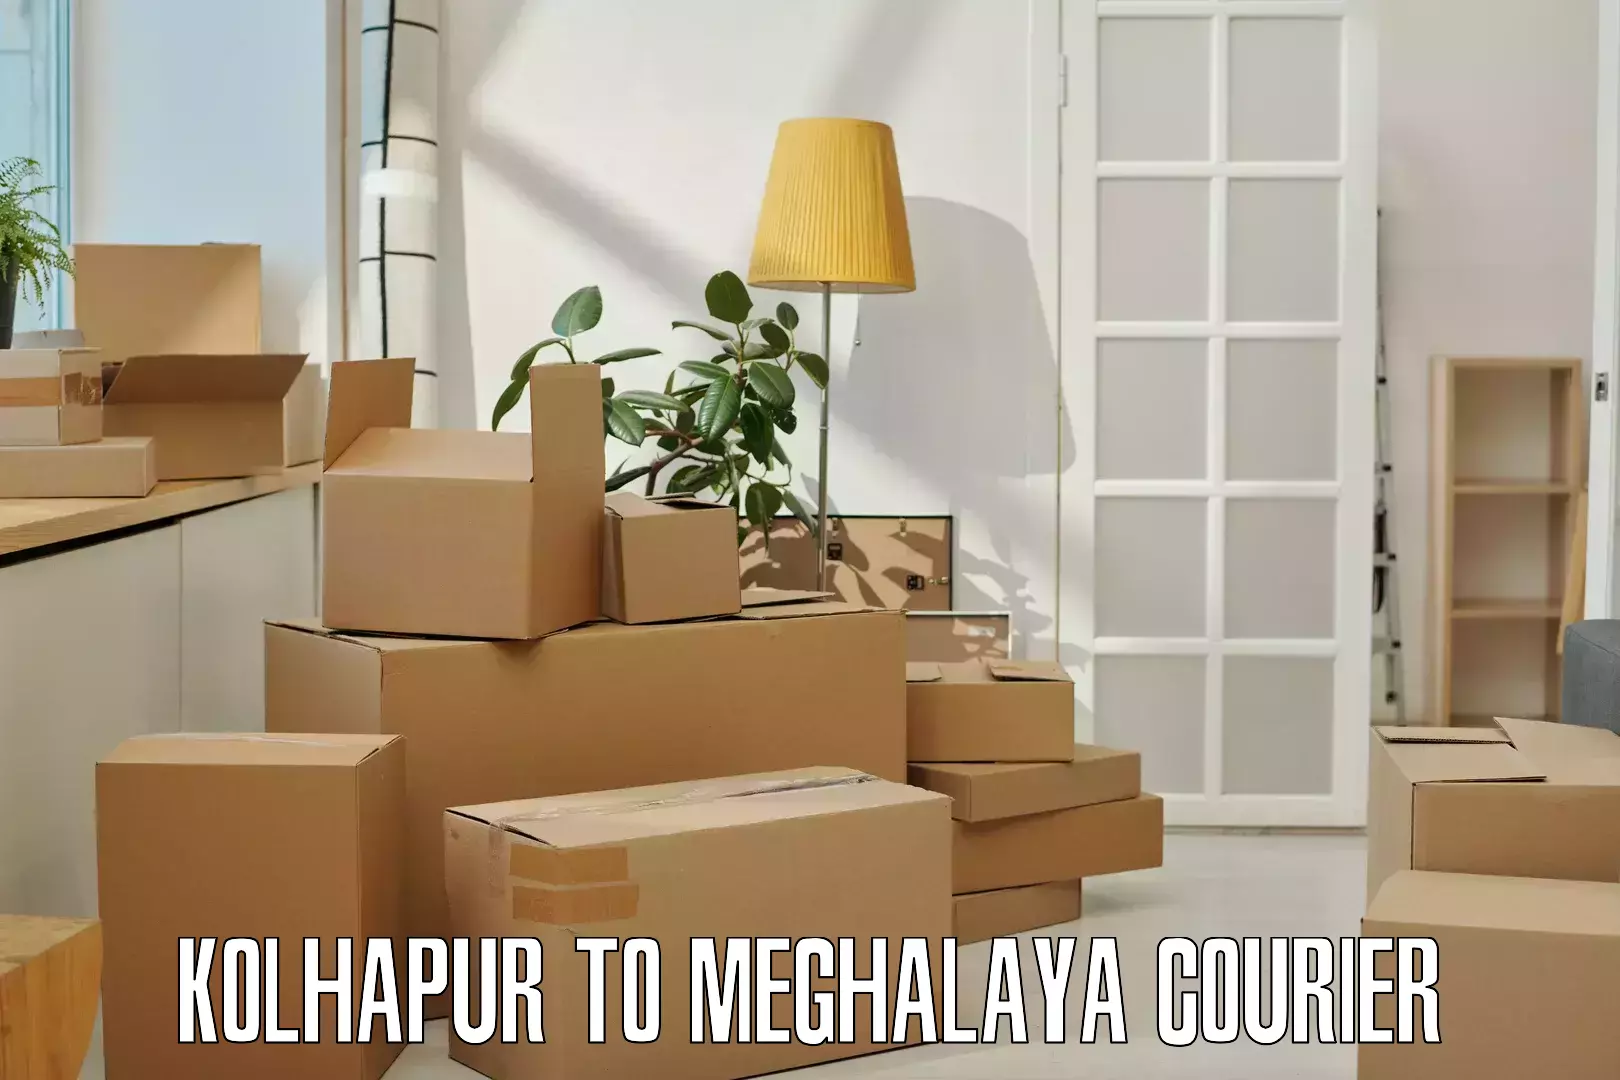 Pharmaceutical courier Kolhapur to Meghalaya